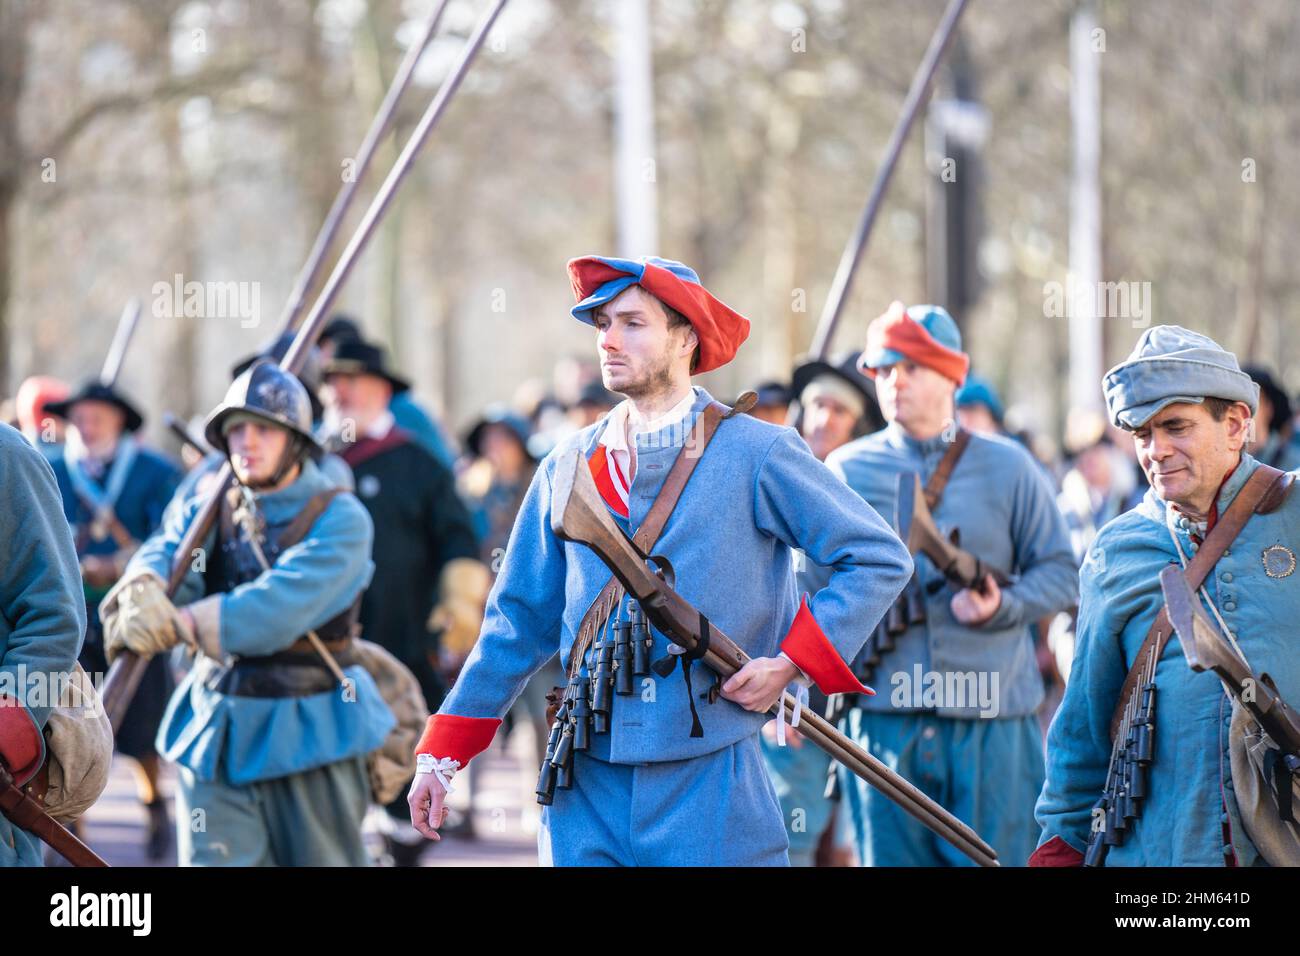 L'Esercito dei Re, parte della Società della Guerra civile Inglese. 50th anniversario della parata dell'Esercito dei Re. Londra, 30 gennaio 2022 Foto Stock